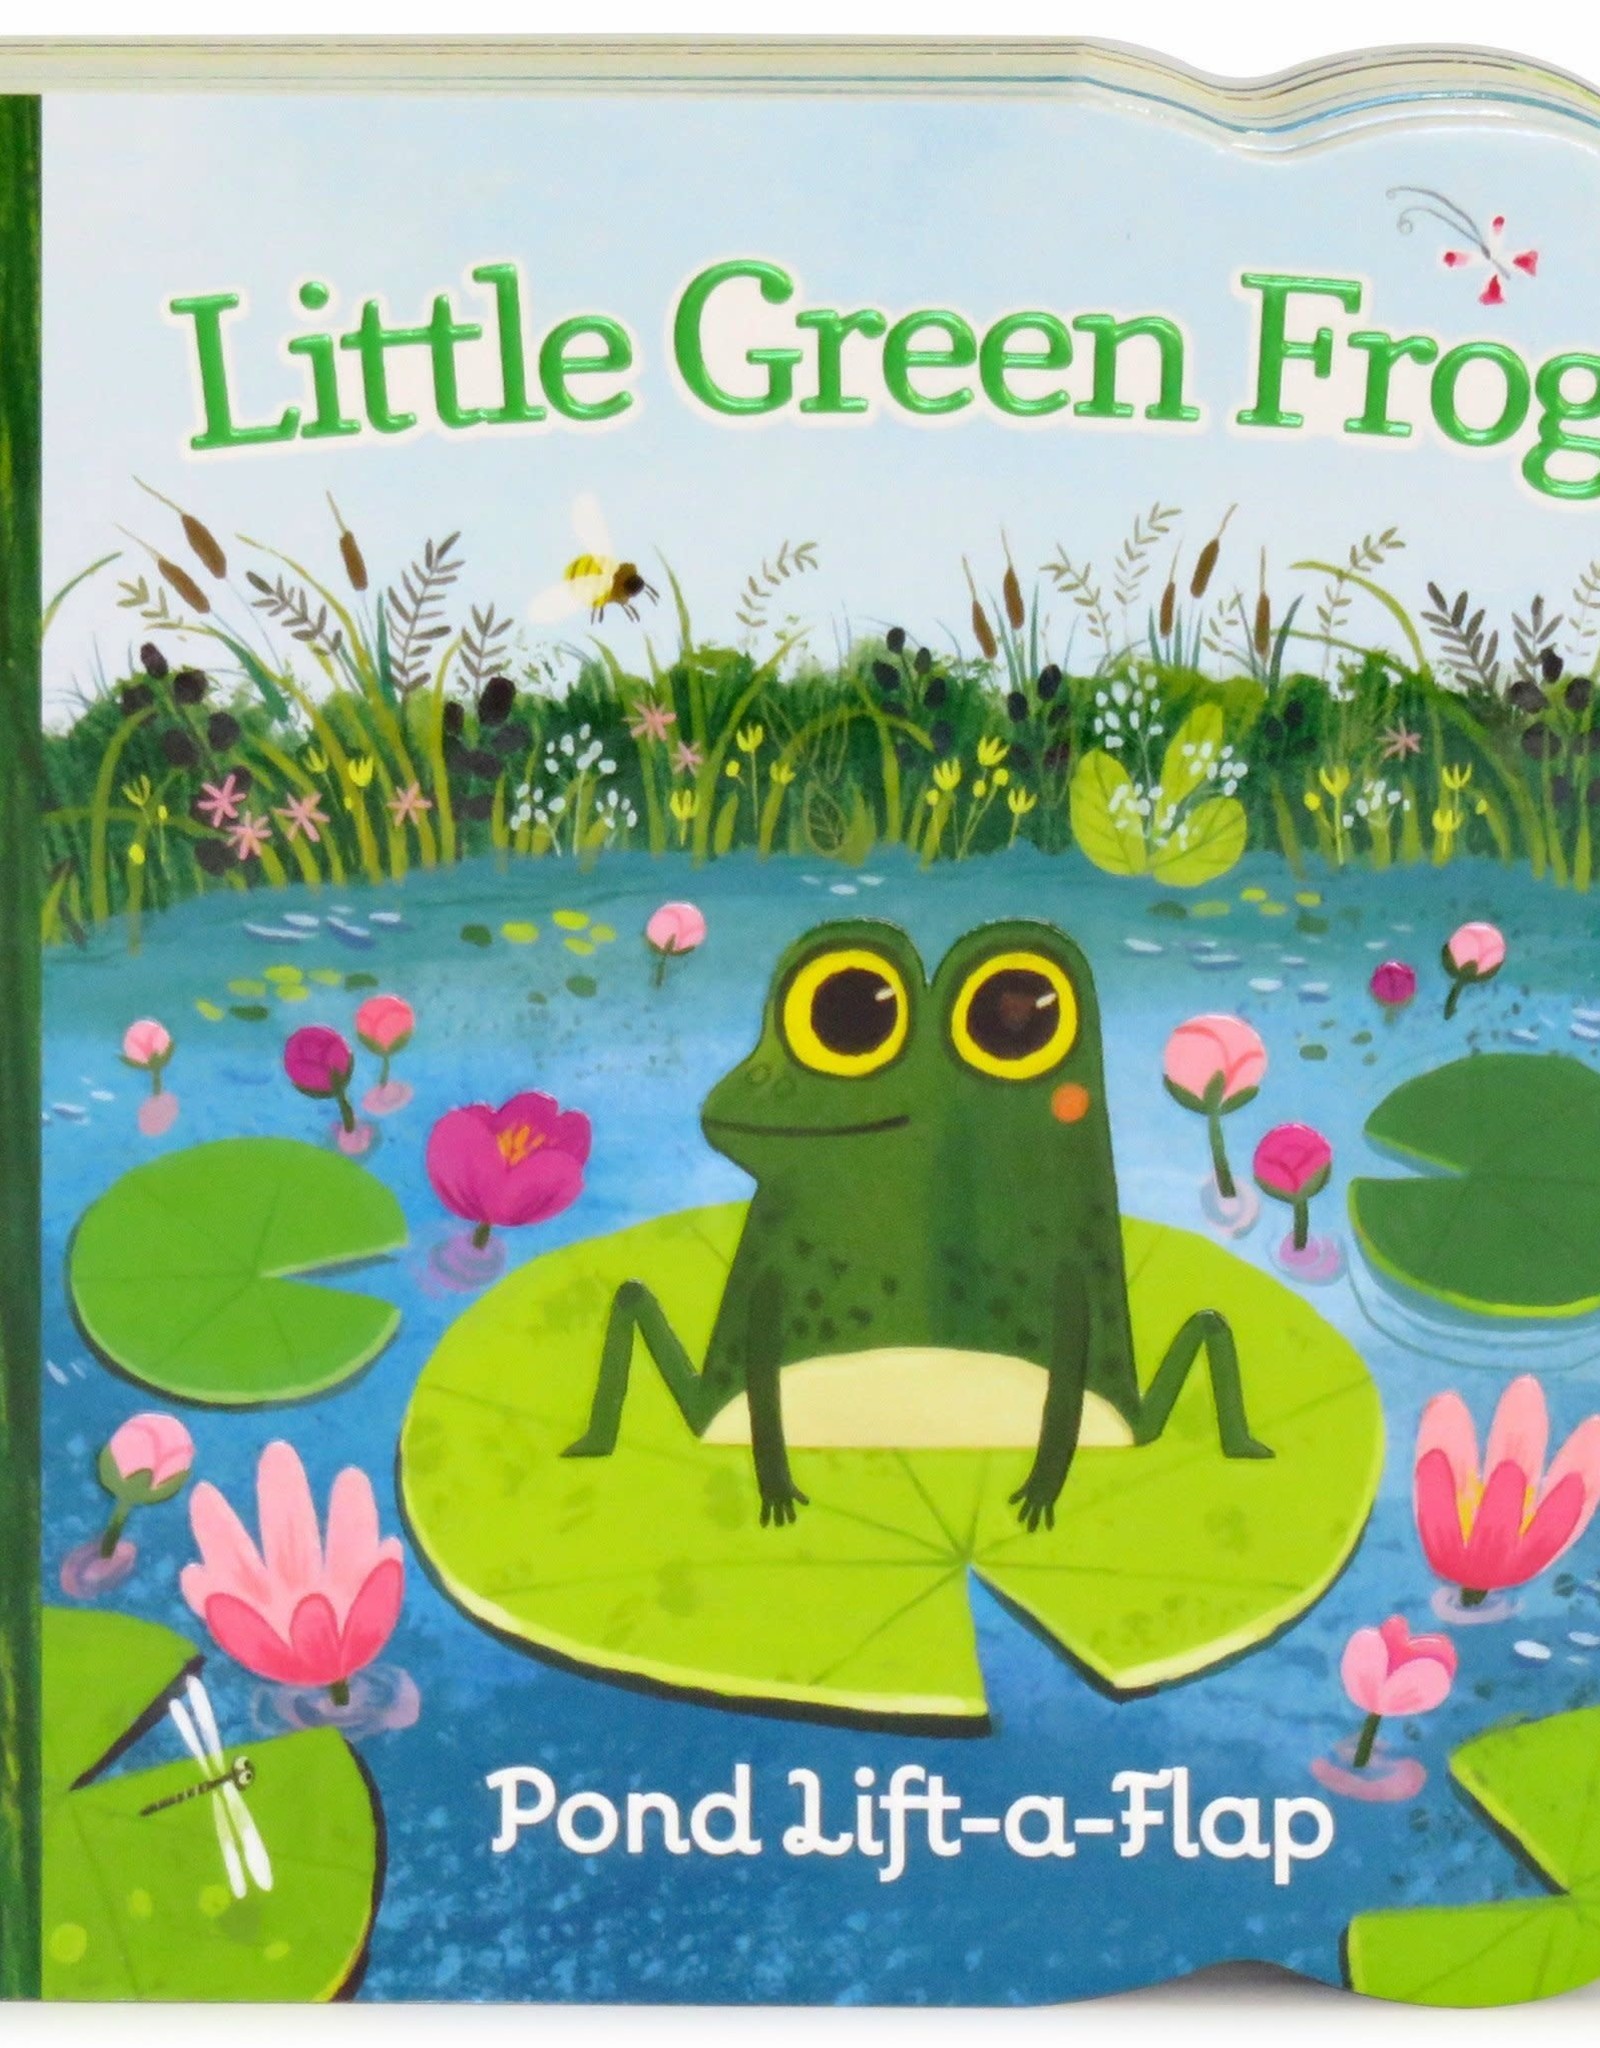 Little Green Frog board book